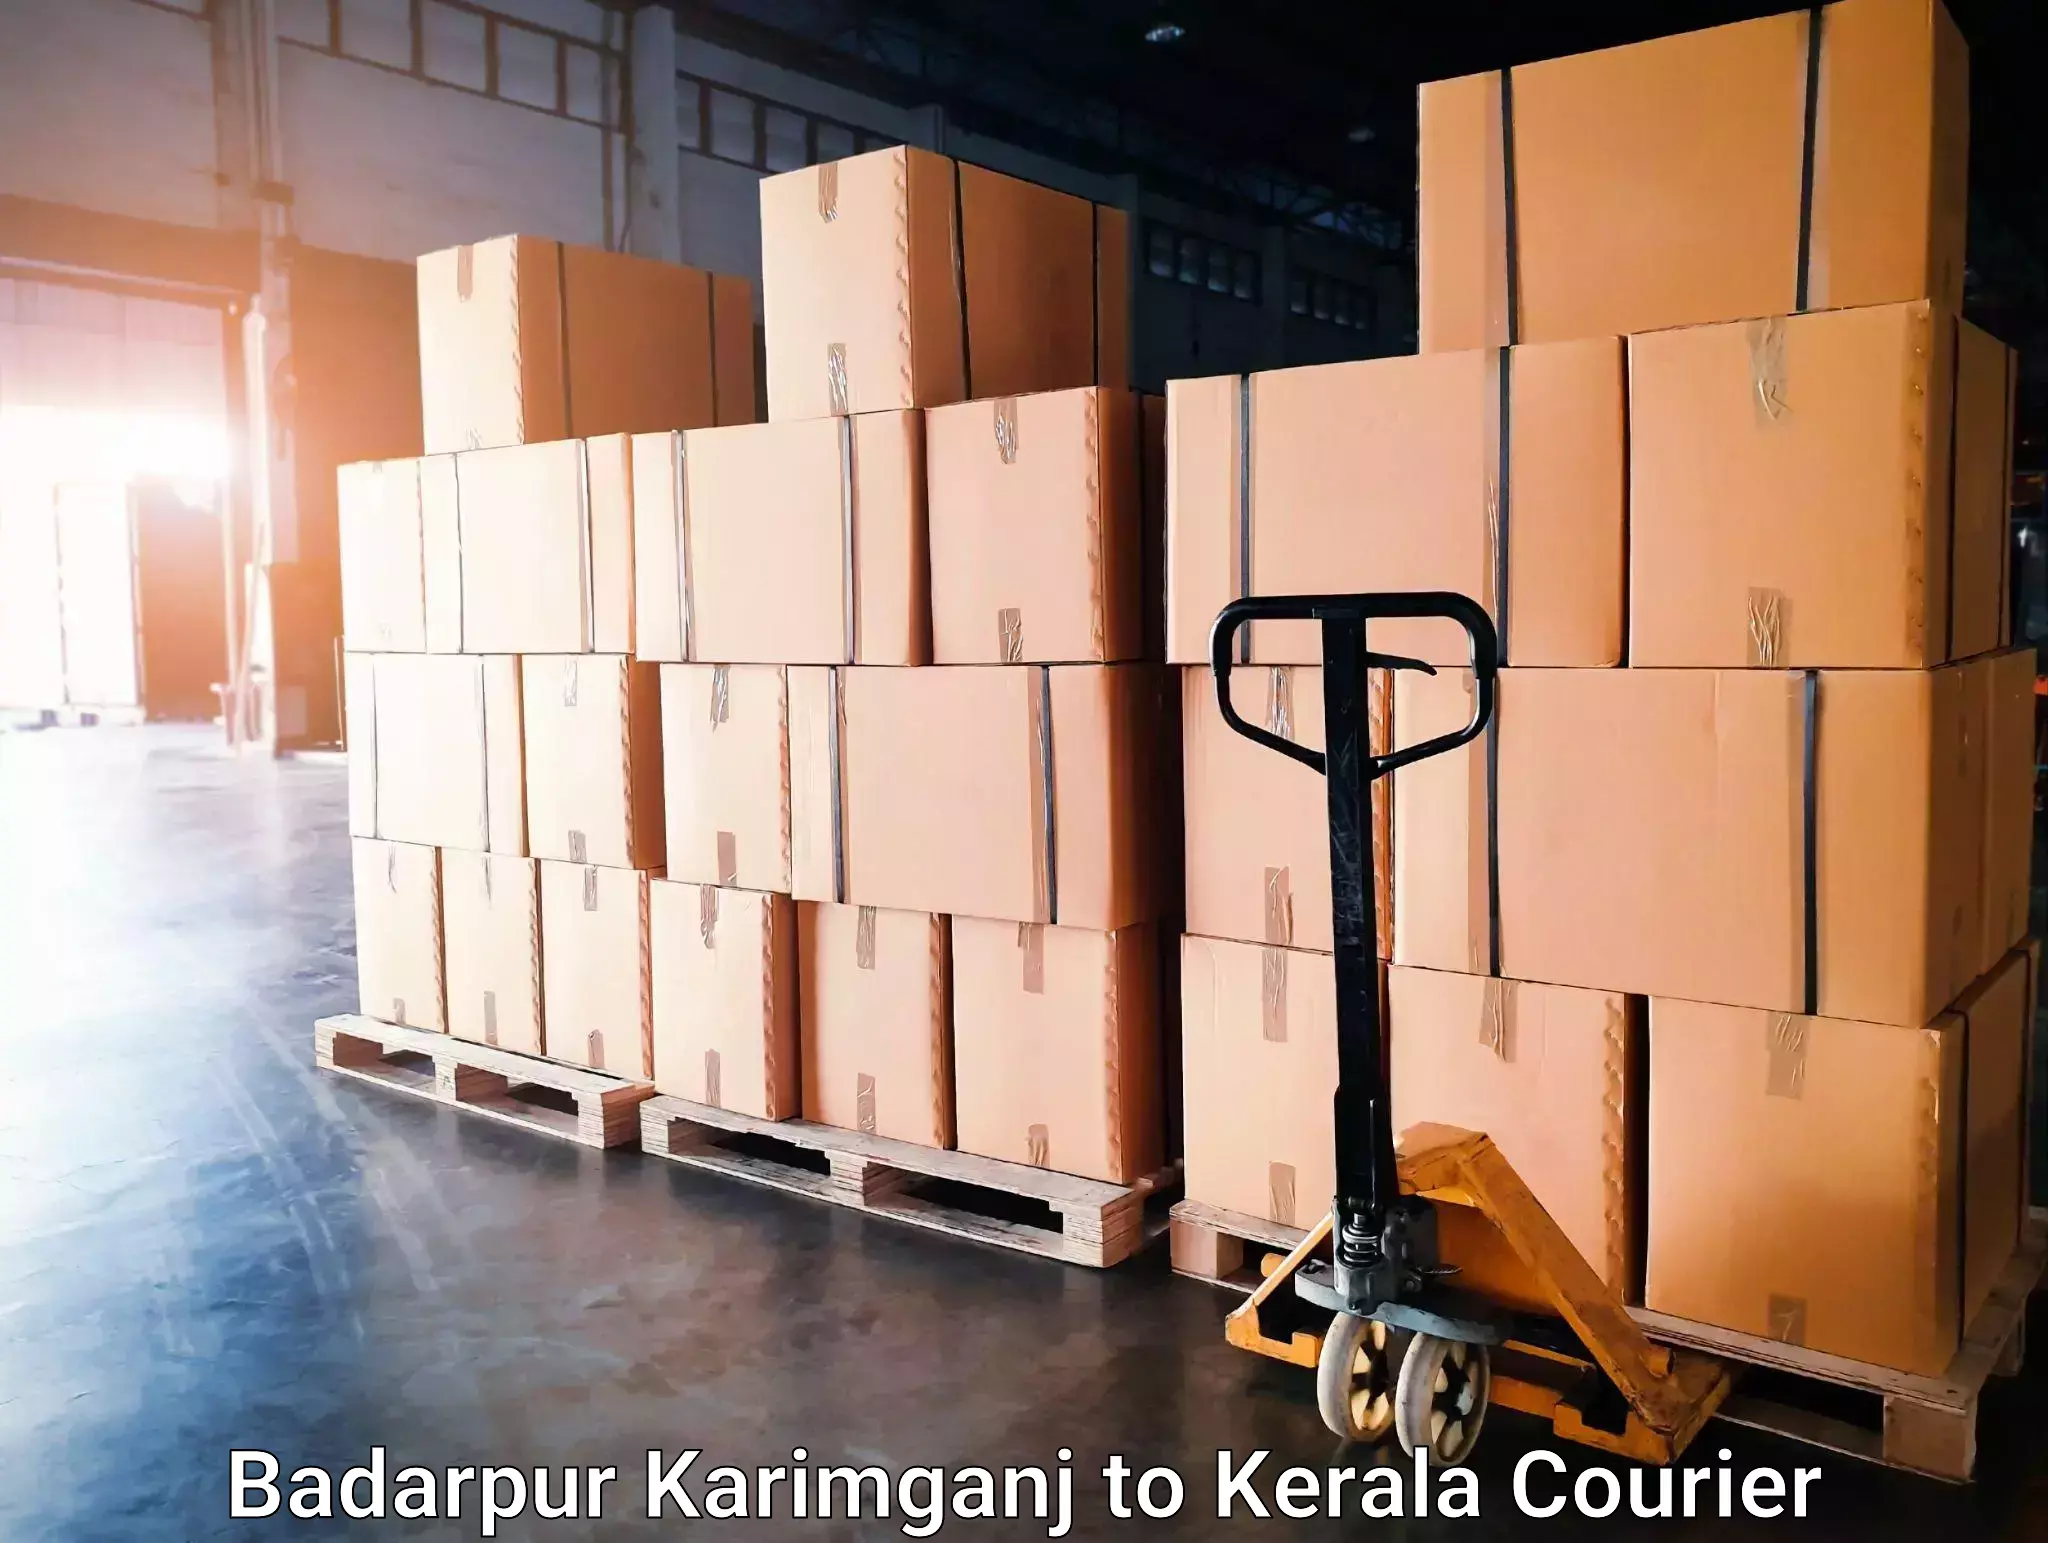 Tech-enabled shipping Badarpur Karimganj to Thalassery